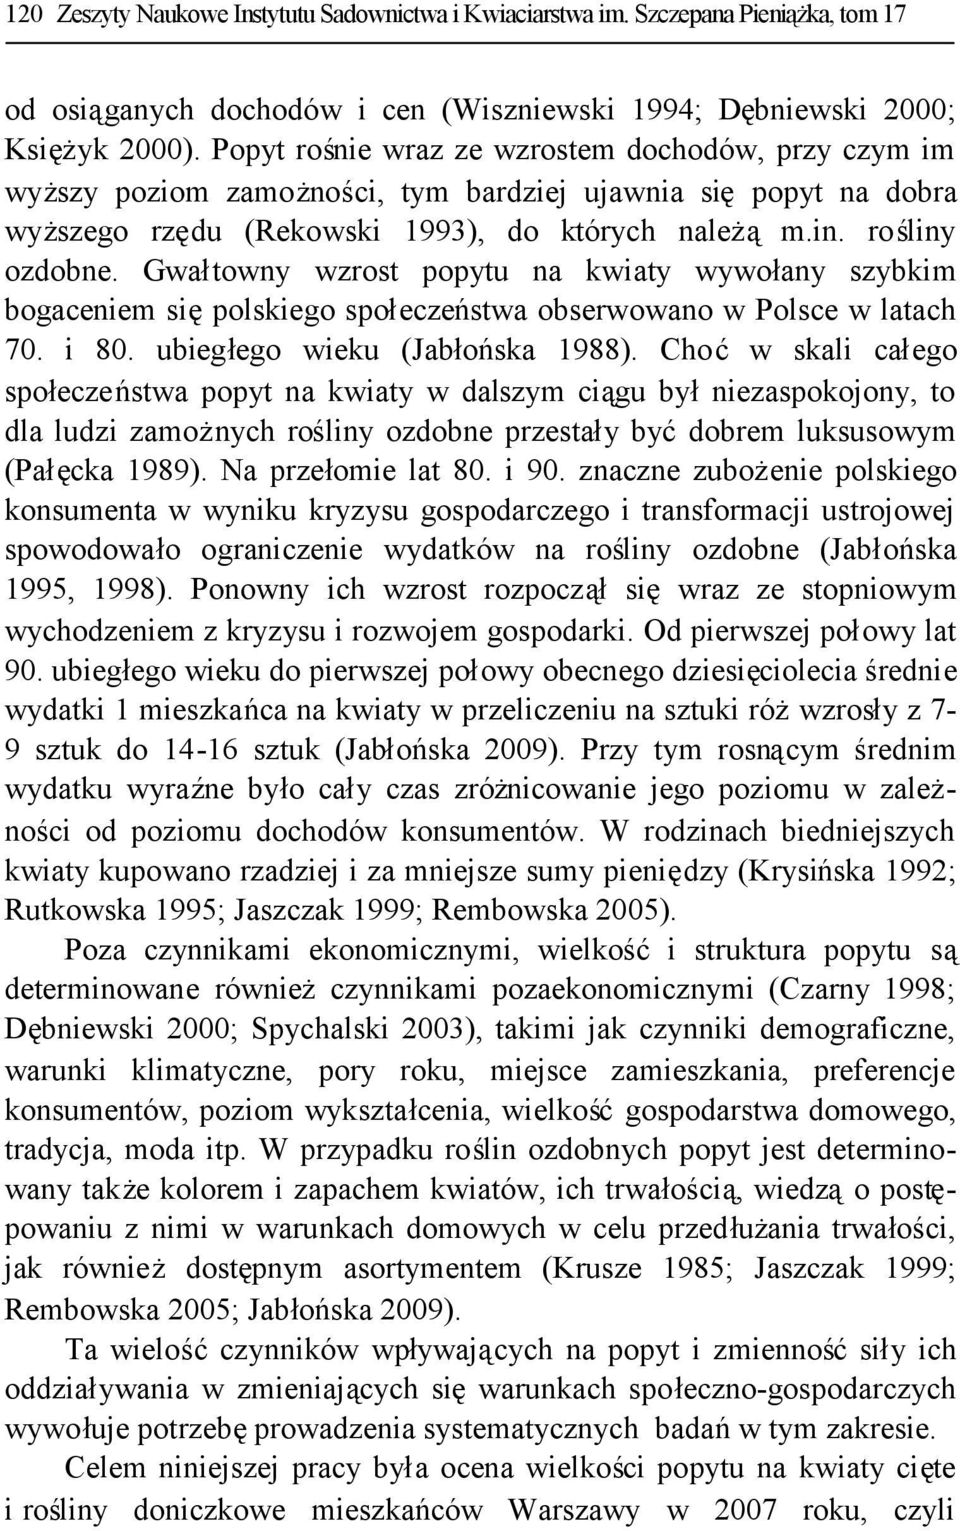 Gwałtowny wzrost popytu na kwiaty wywołany szybkim bogaceniem siępolskiego społeczeństwa obserwowano w Polsce w latach 70. i 80. ubiegłego wieku (Jabłońska 1988).